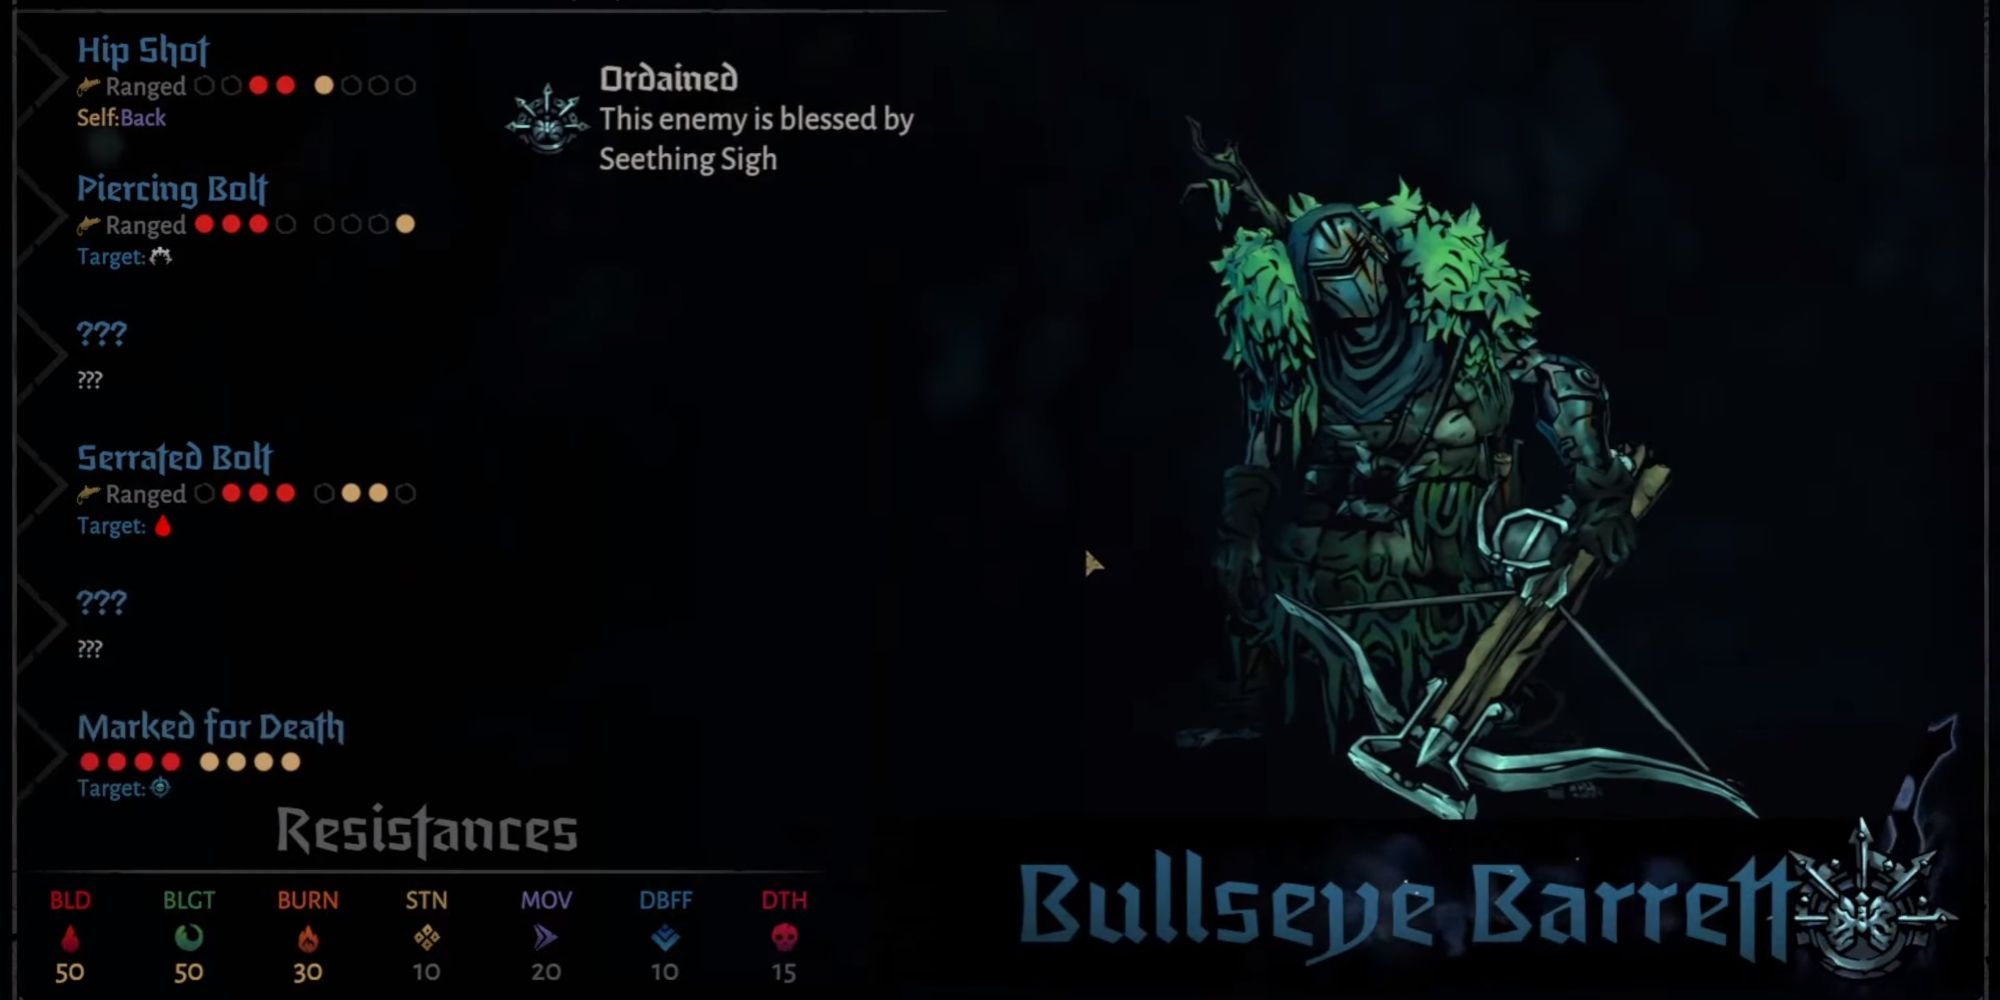 Bullseye Barrett enemy in Darkest Dungeon 2 on menu screen